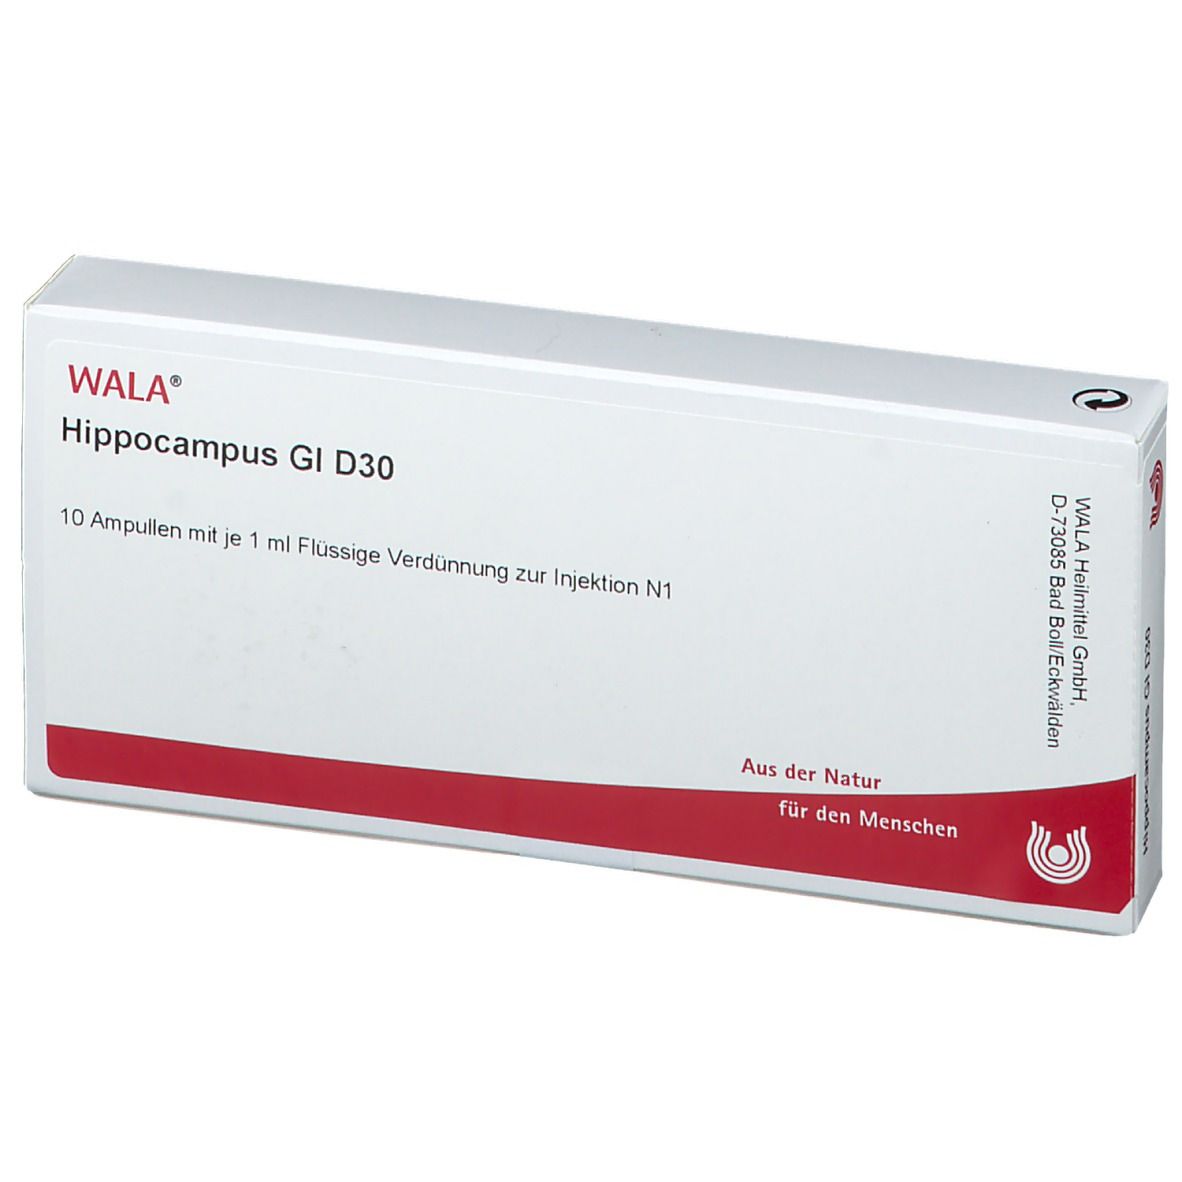 WALA® Hippocampus Gl D 30